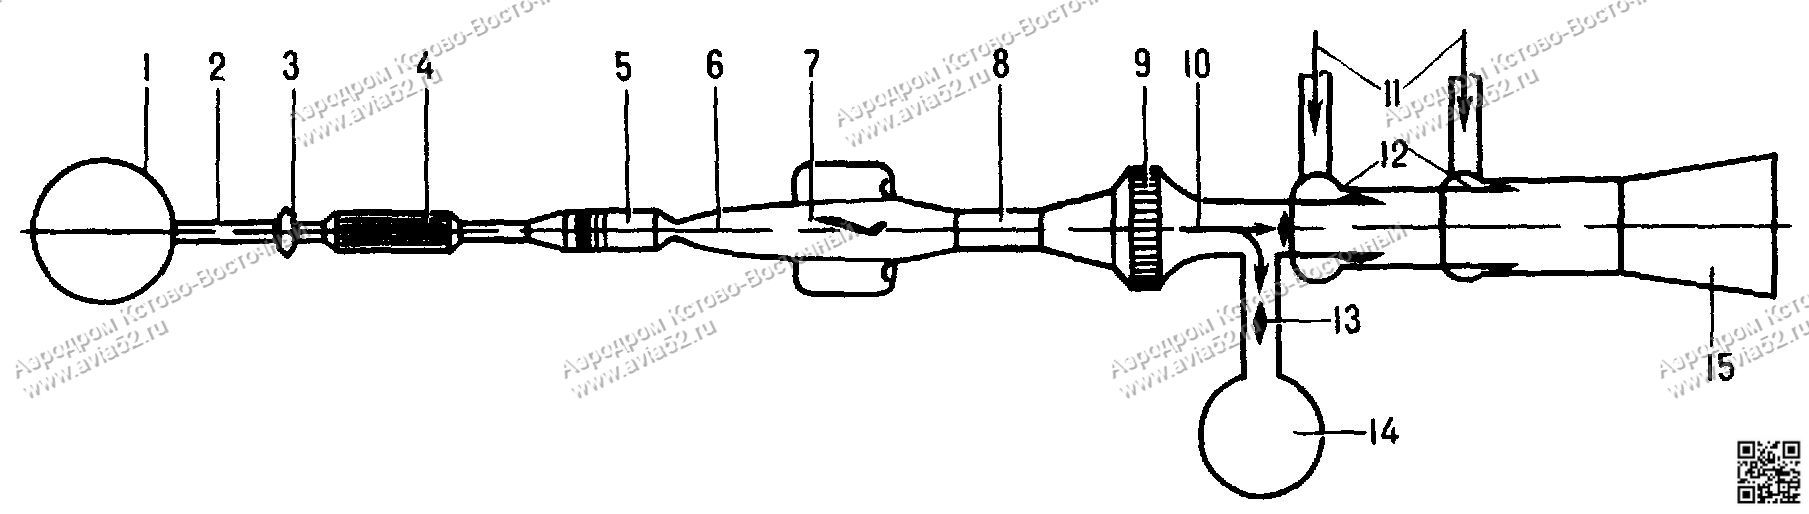 Аэродинамика самолета Схема баллонной гиперзвуковой аэродинамической трубы www.avia52.ru